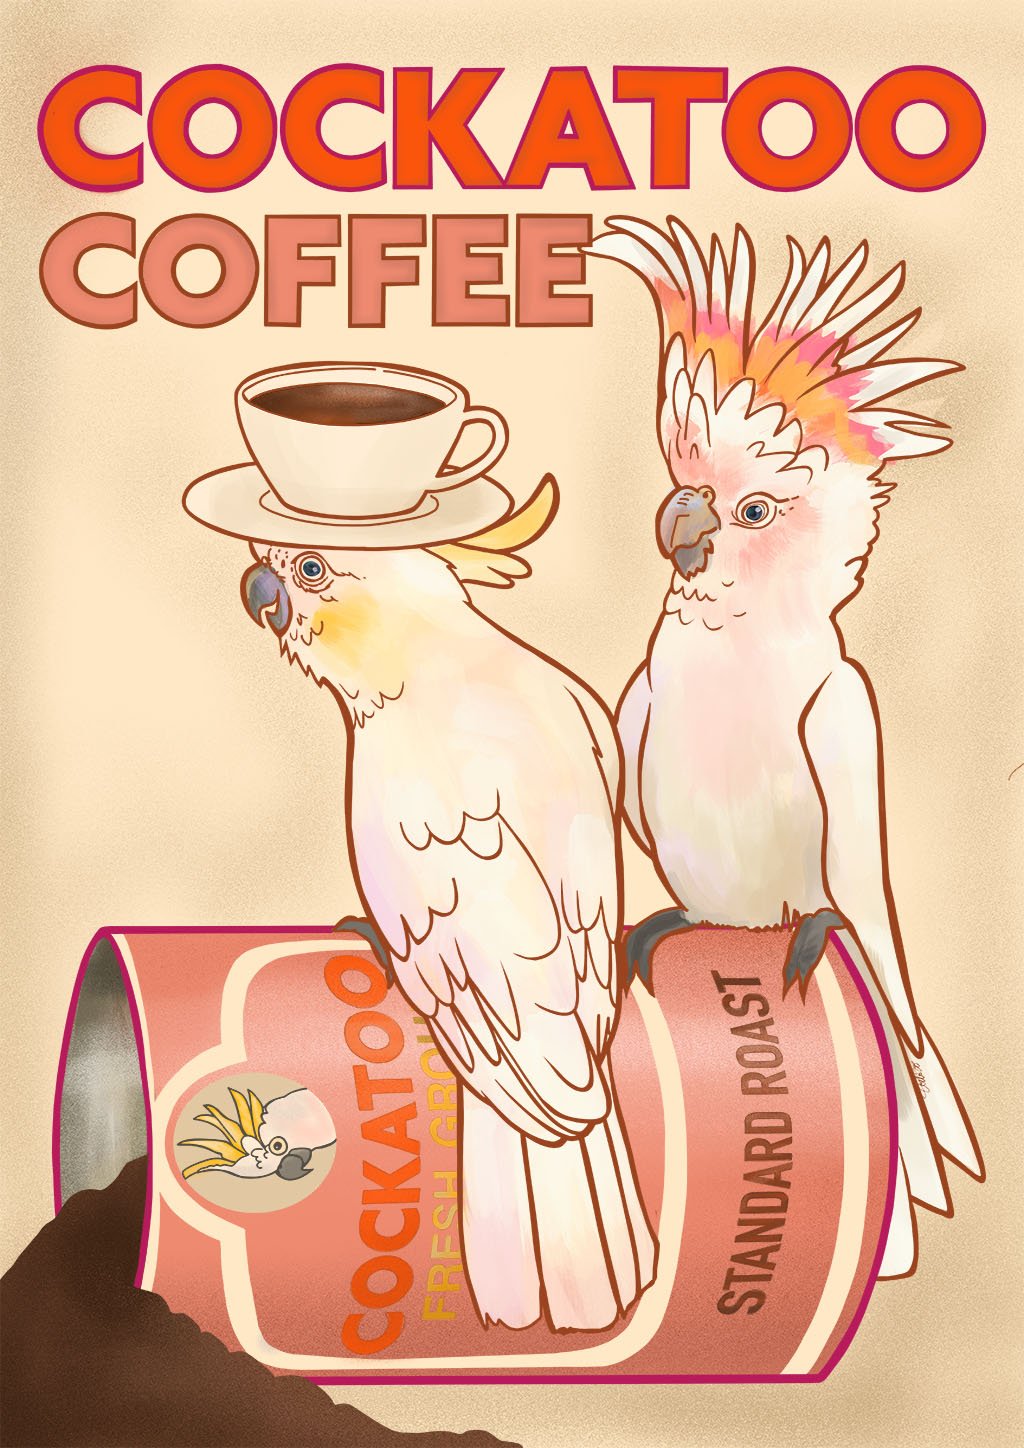 Cockatoo Coffee A3 Giclée Print